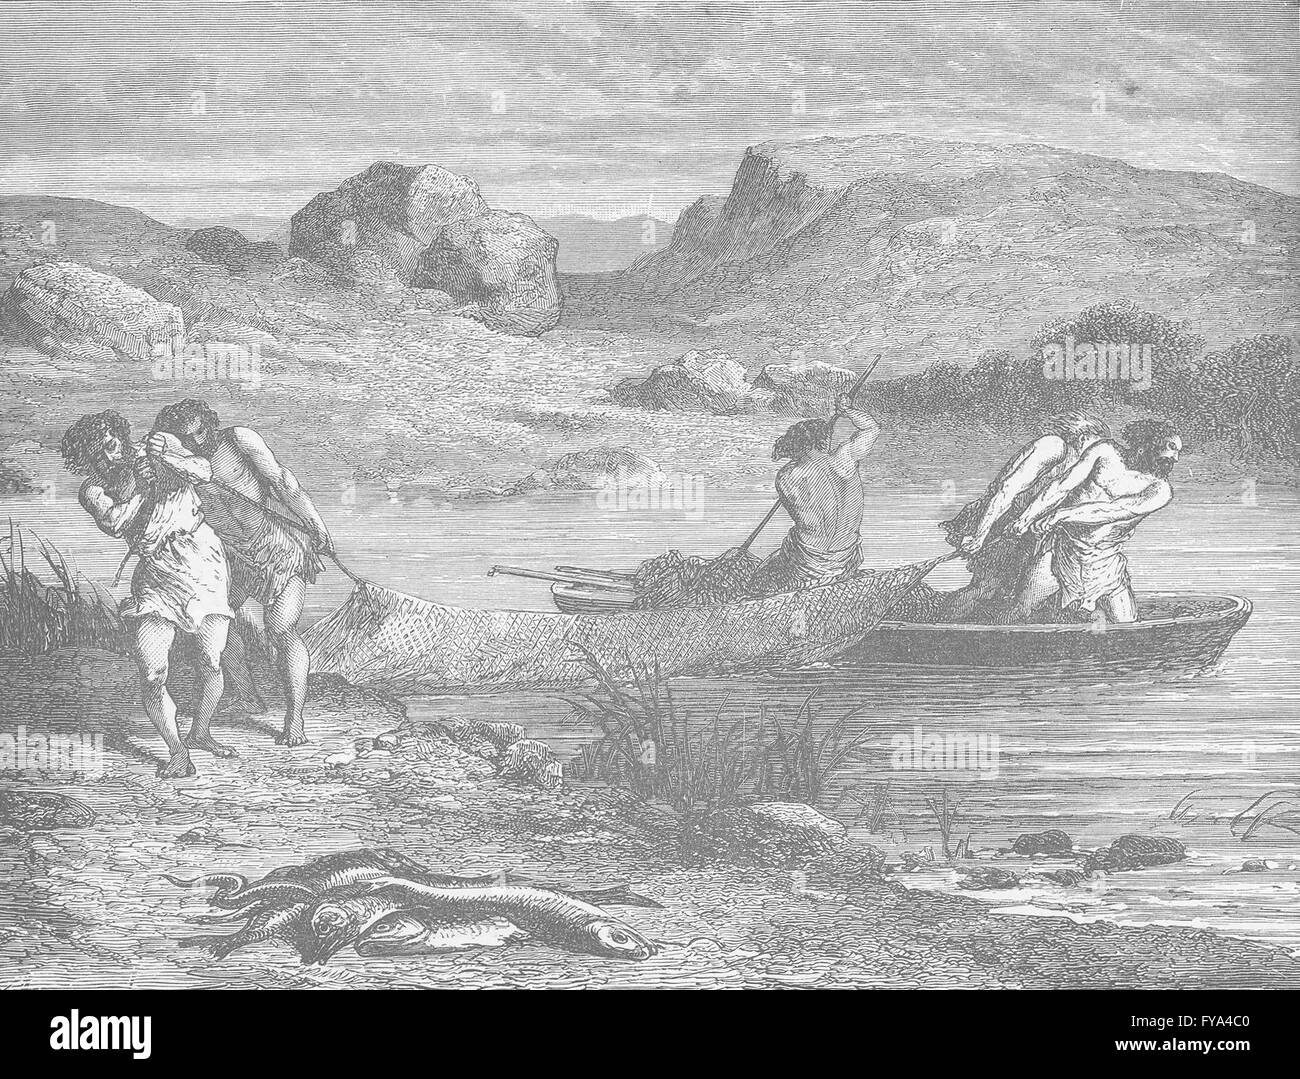 Prehistoria: pesca durante la piedra pulida (periodo neolítico), imprimir 1893 Foto de stock